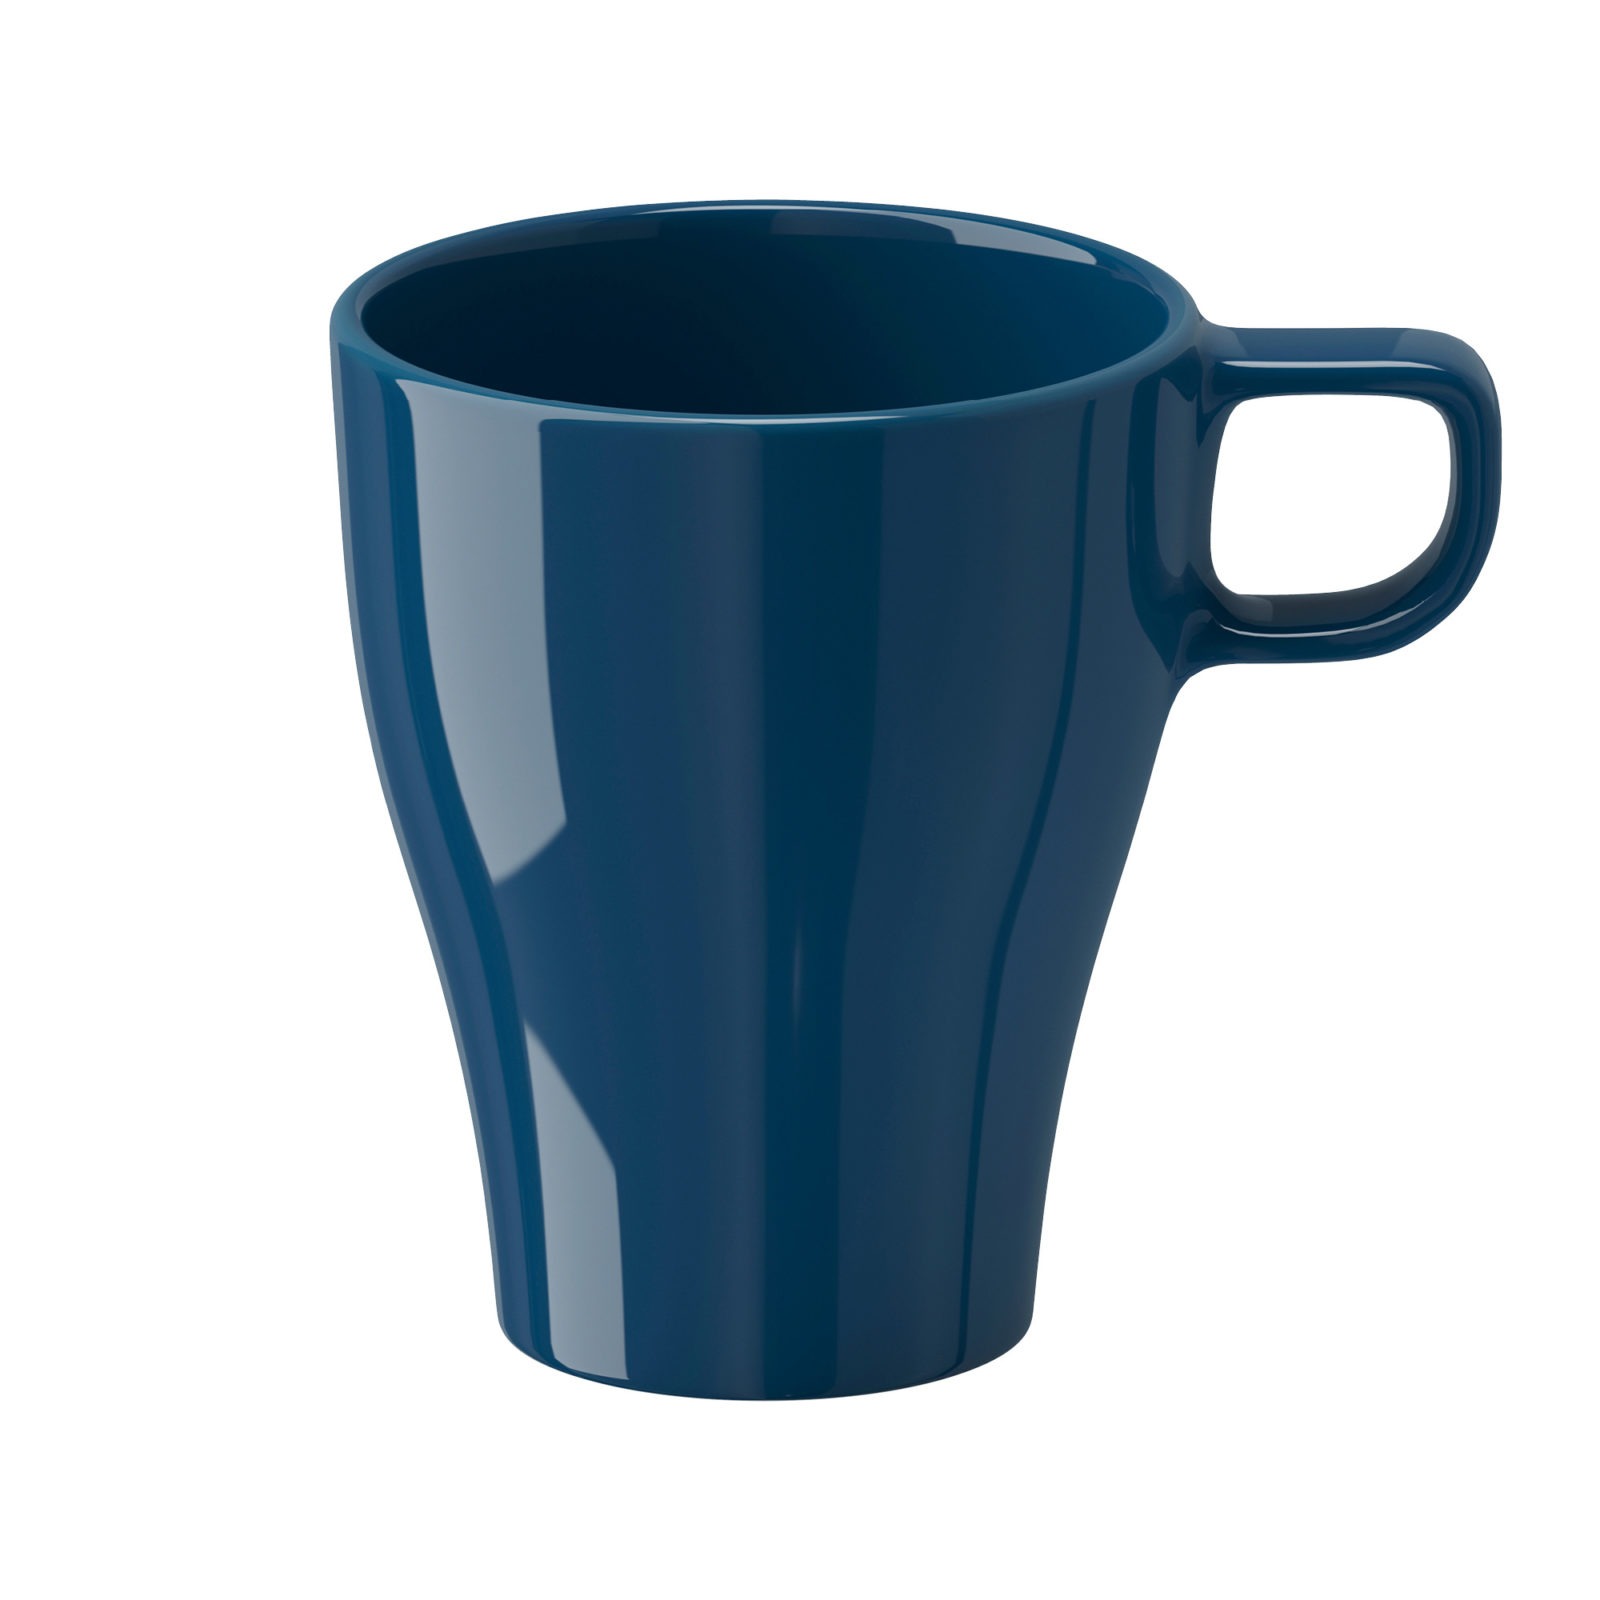 Dark blue mug.